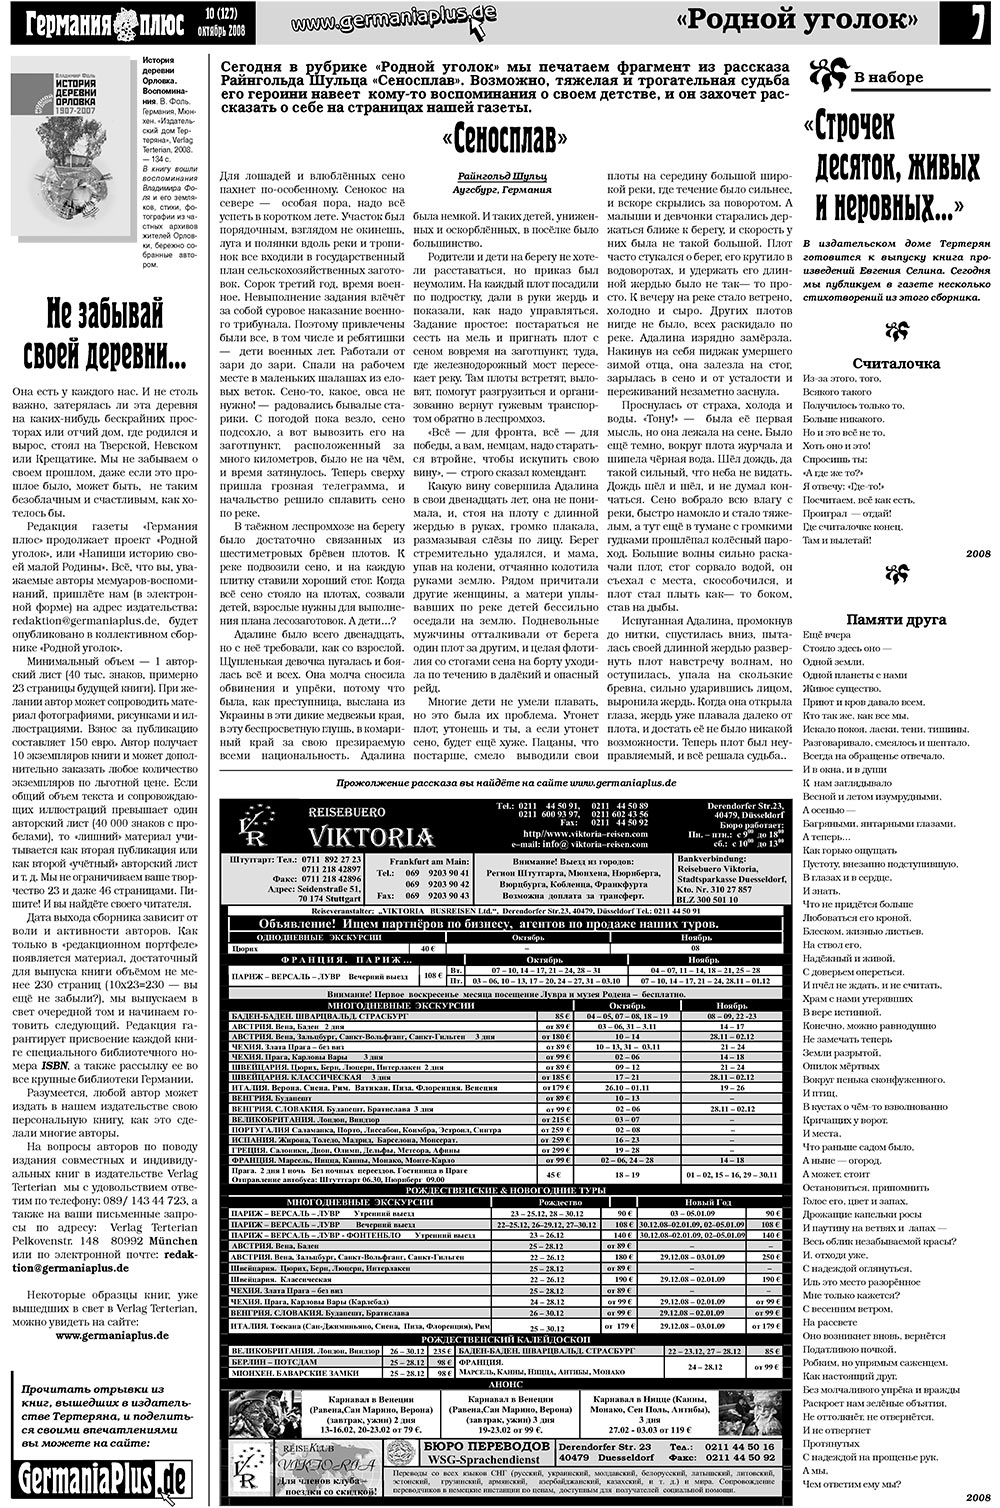 Германия плюс (газета). 2008 год, номер 10, стр. 7